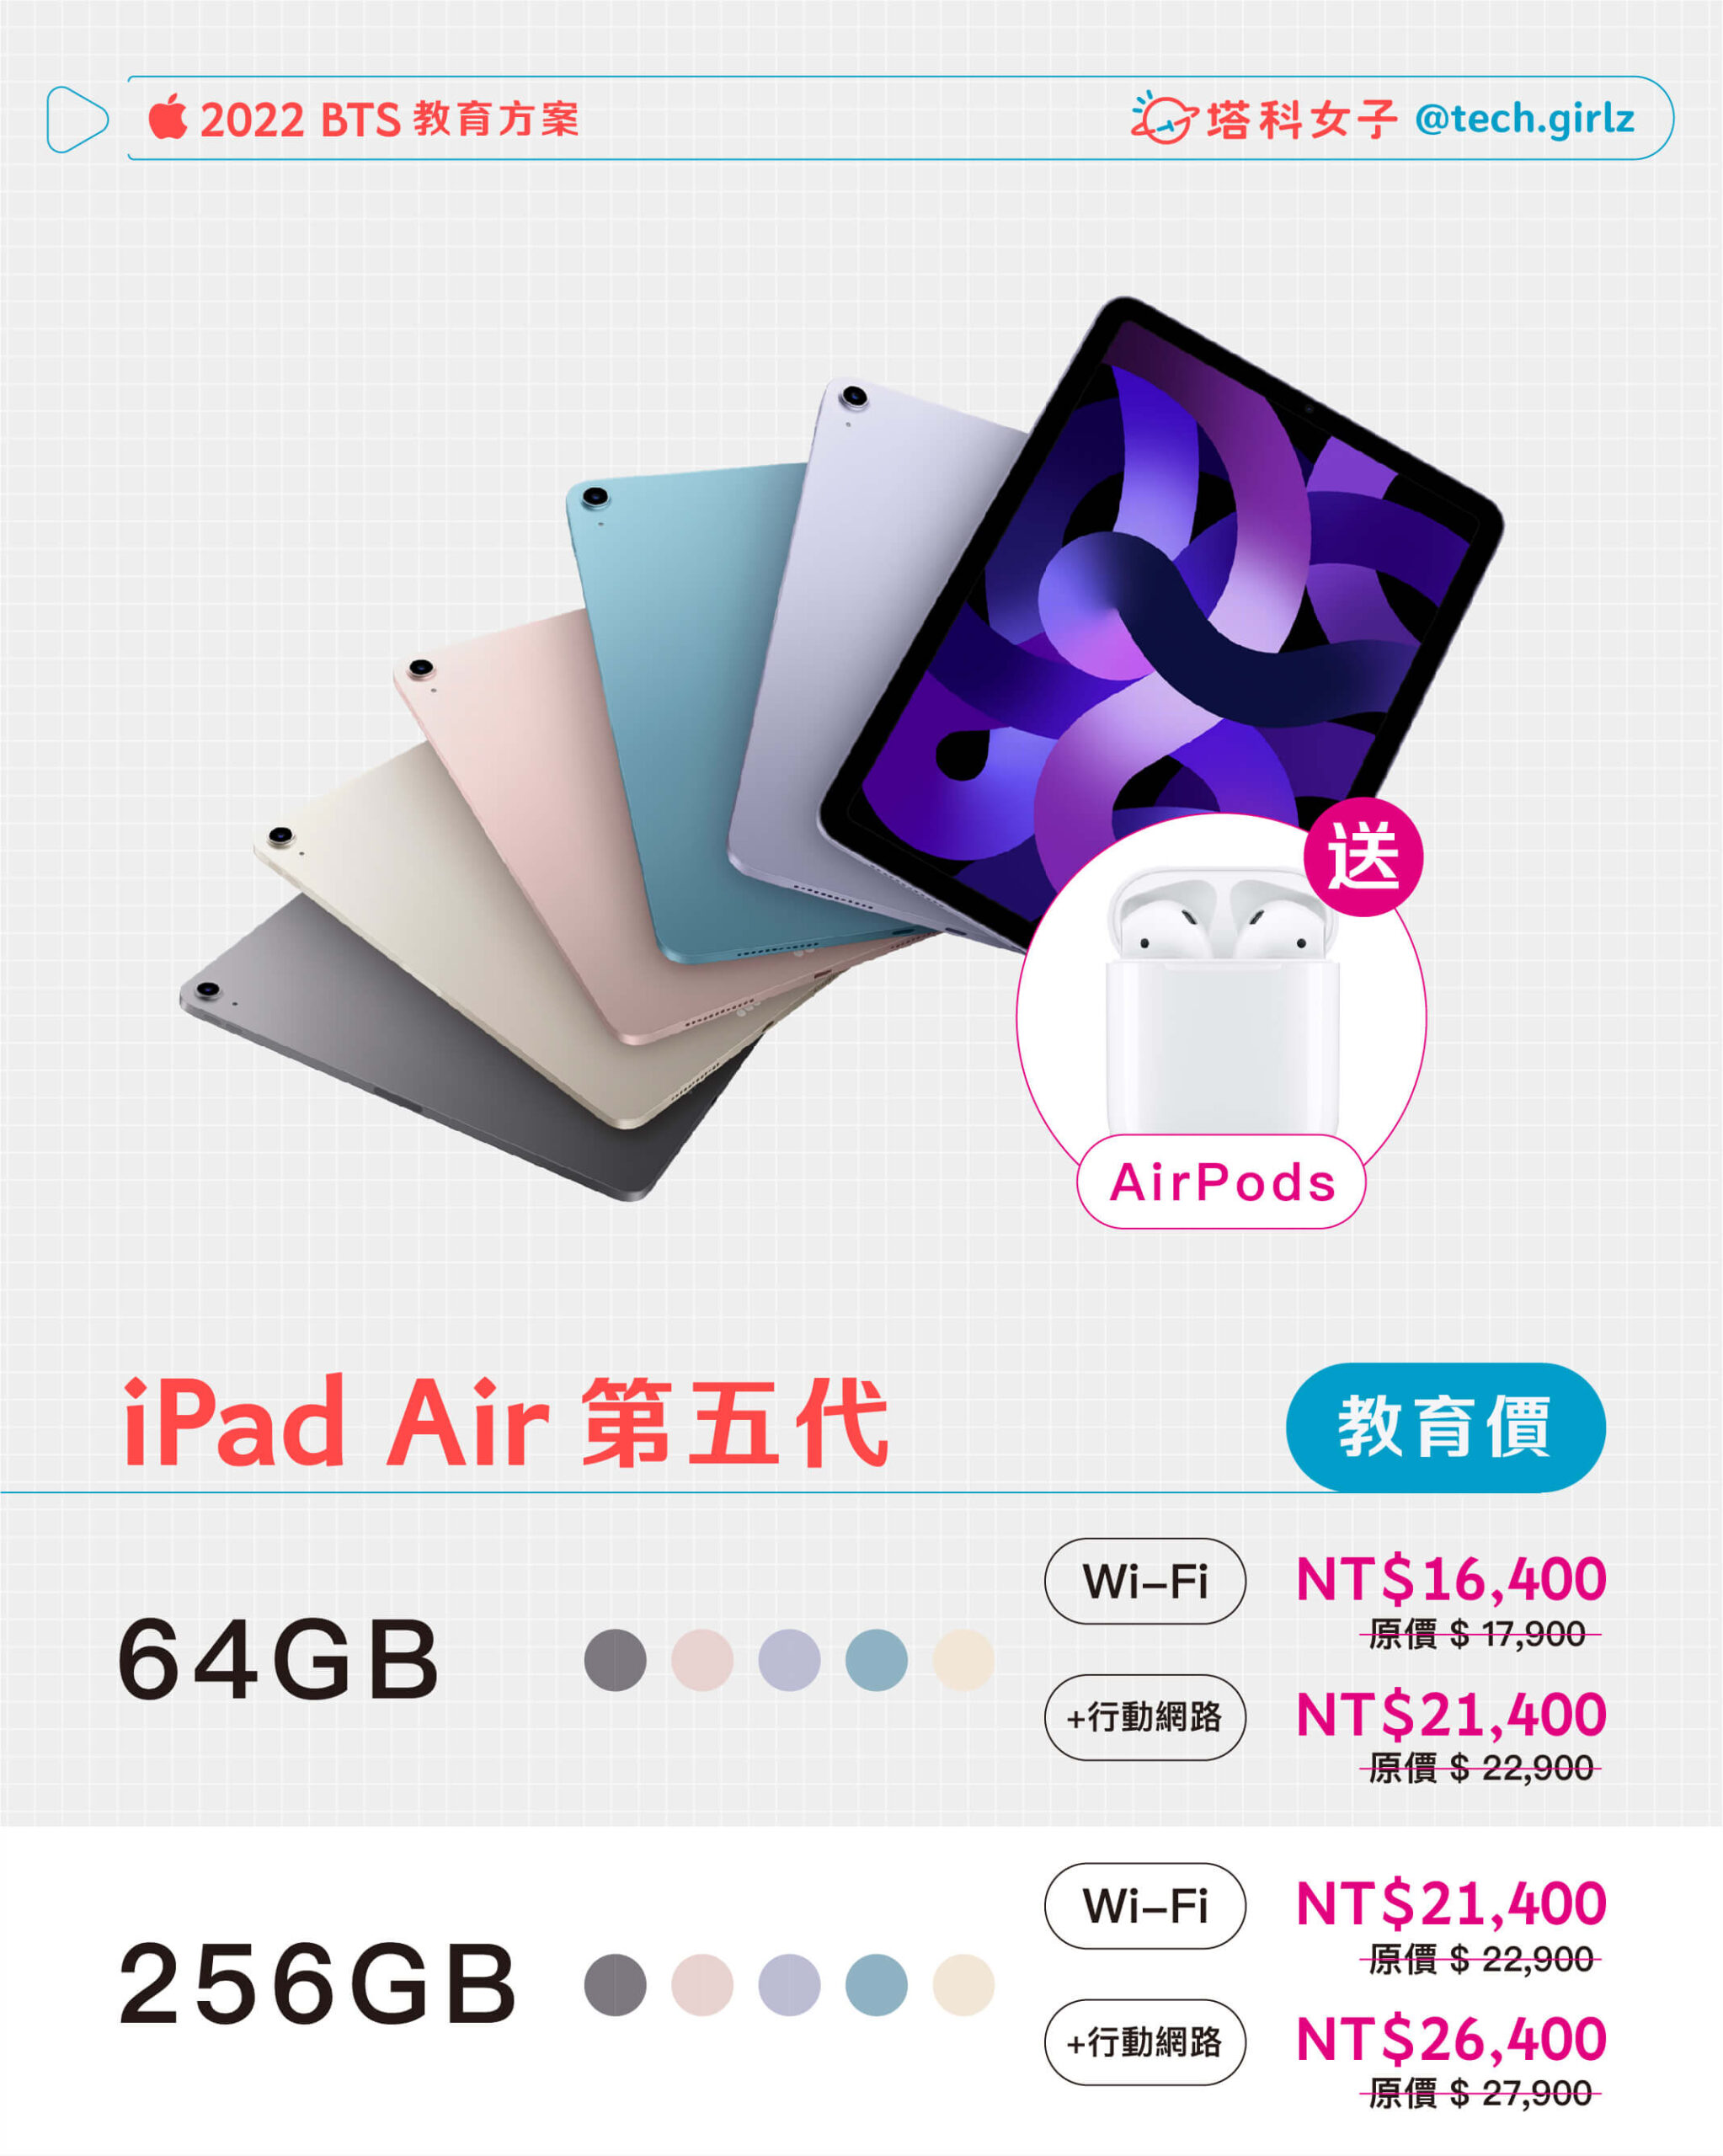 Apple BTS 2022：iPad Air 5 教育方案價格與規格整理